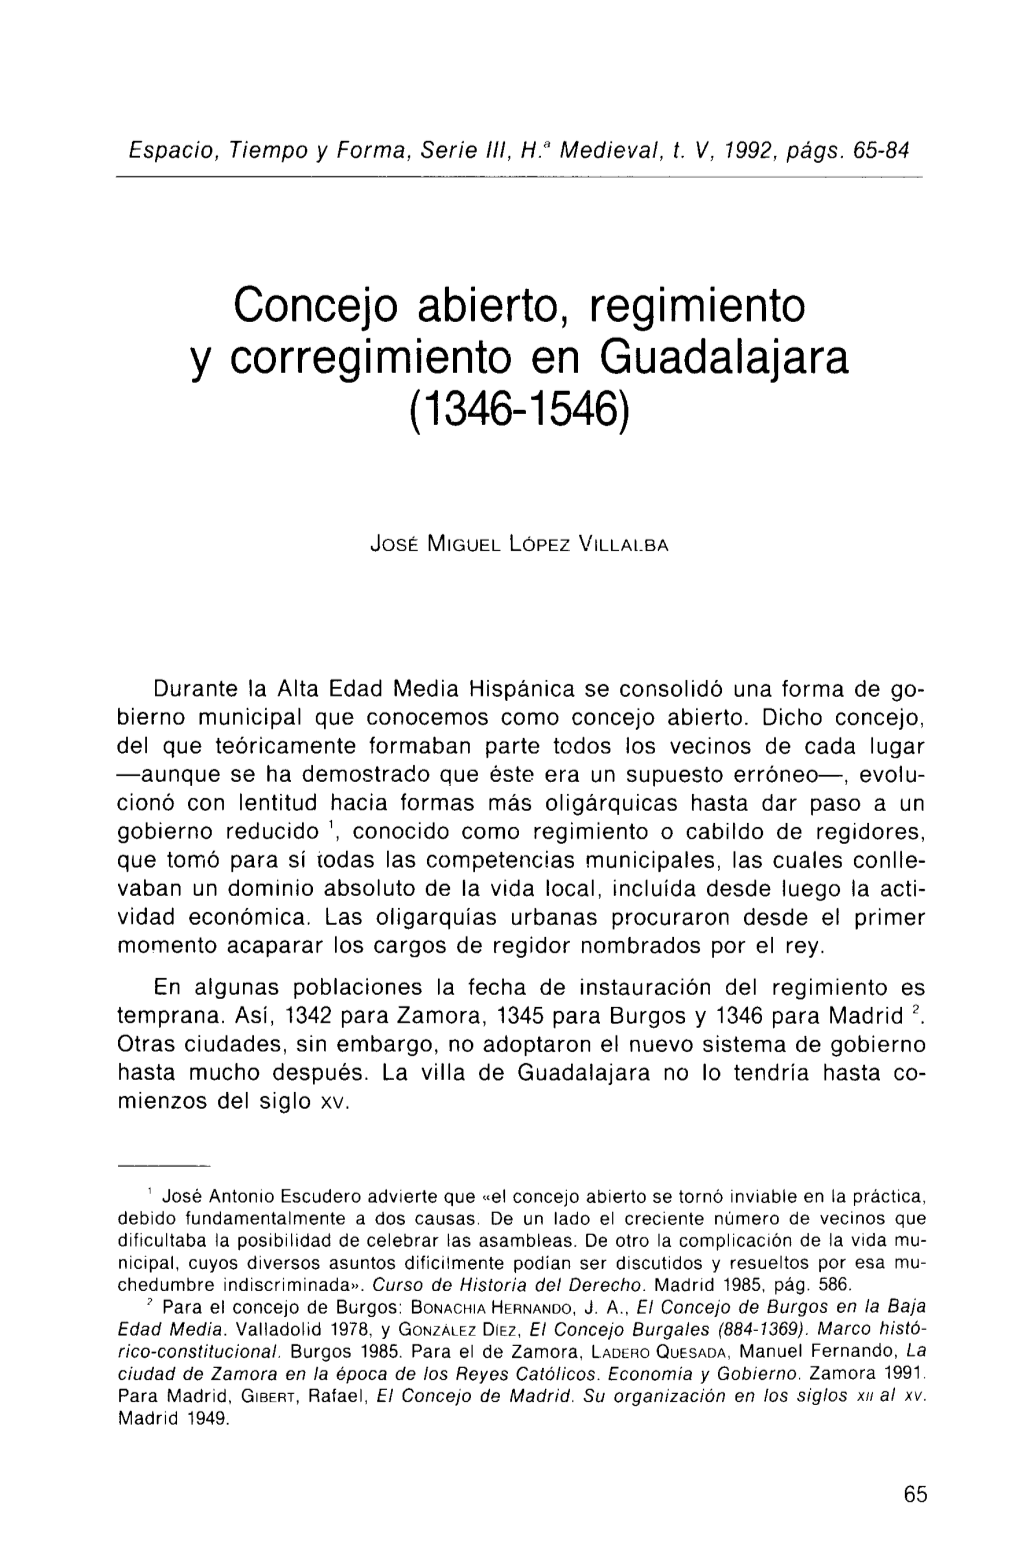 Concejo Abierto, Regimiento Y Corregimiento En Guadalajara (1346-1546)